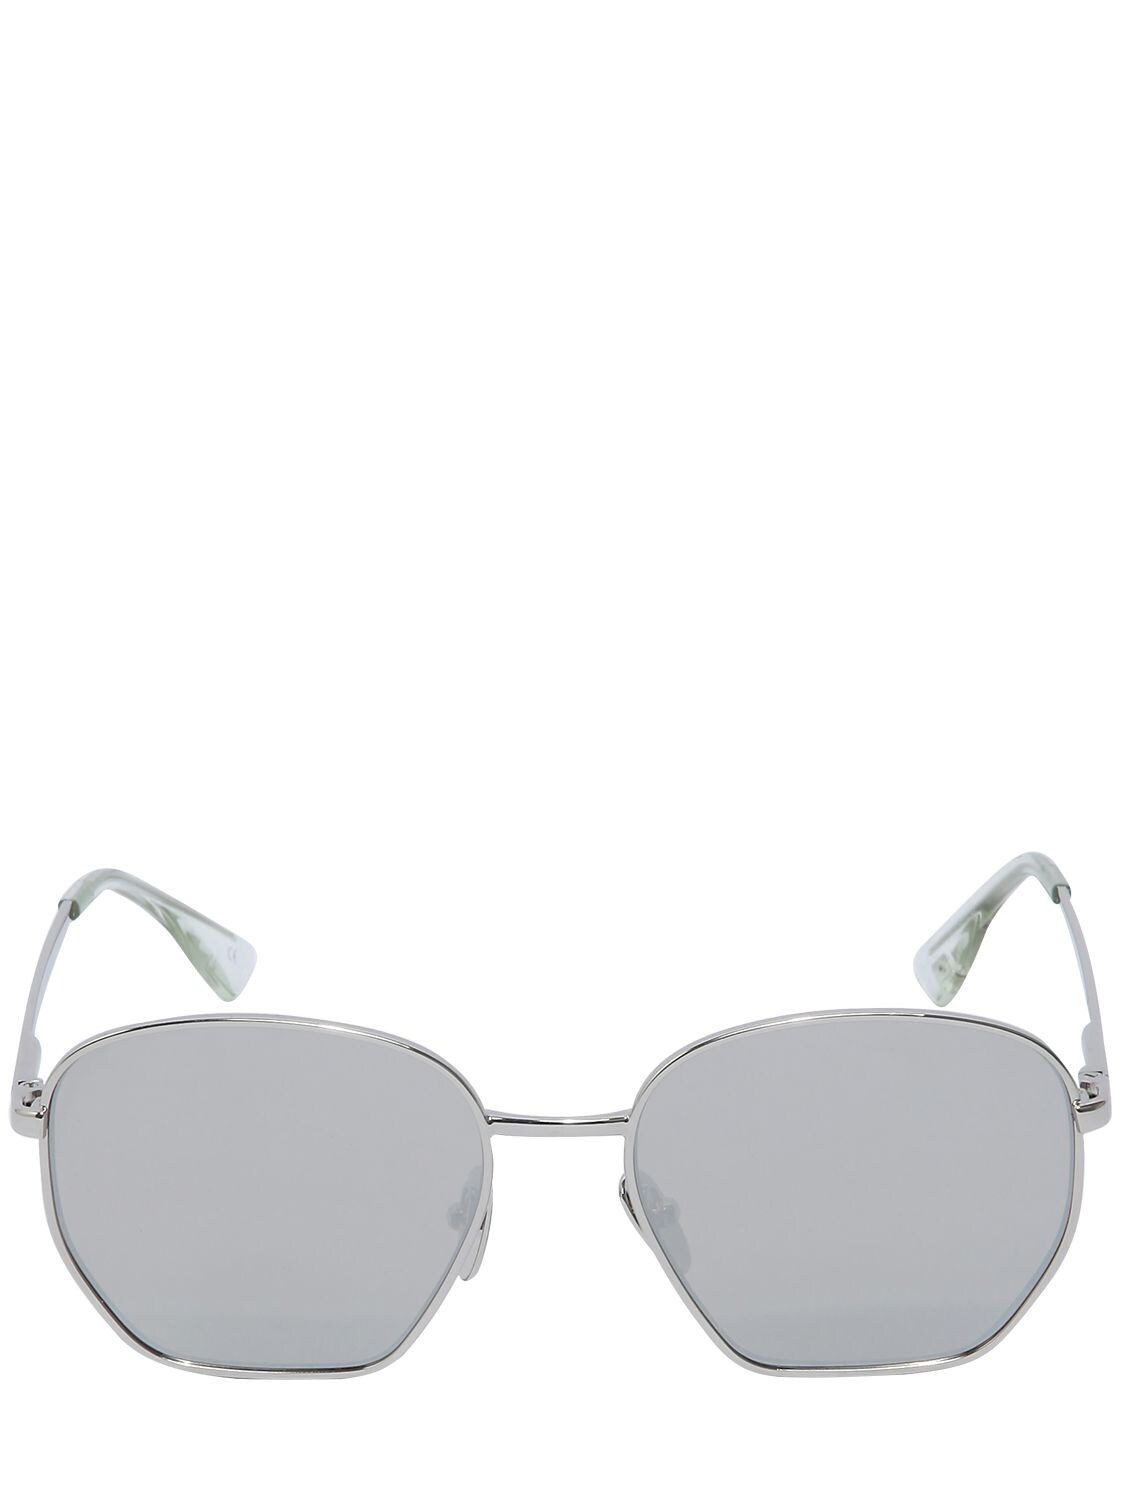 Le Specs X Luxe Ottoman Mirrored Sunglasses In Silver